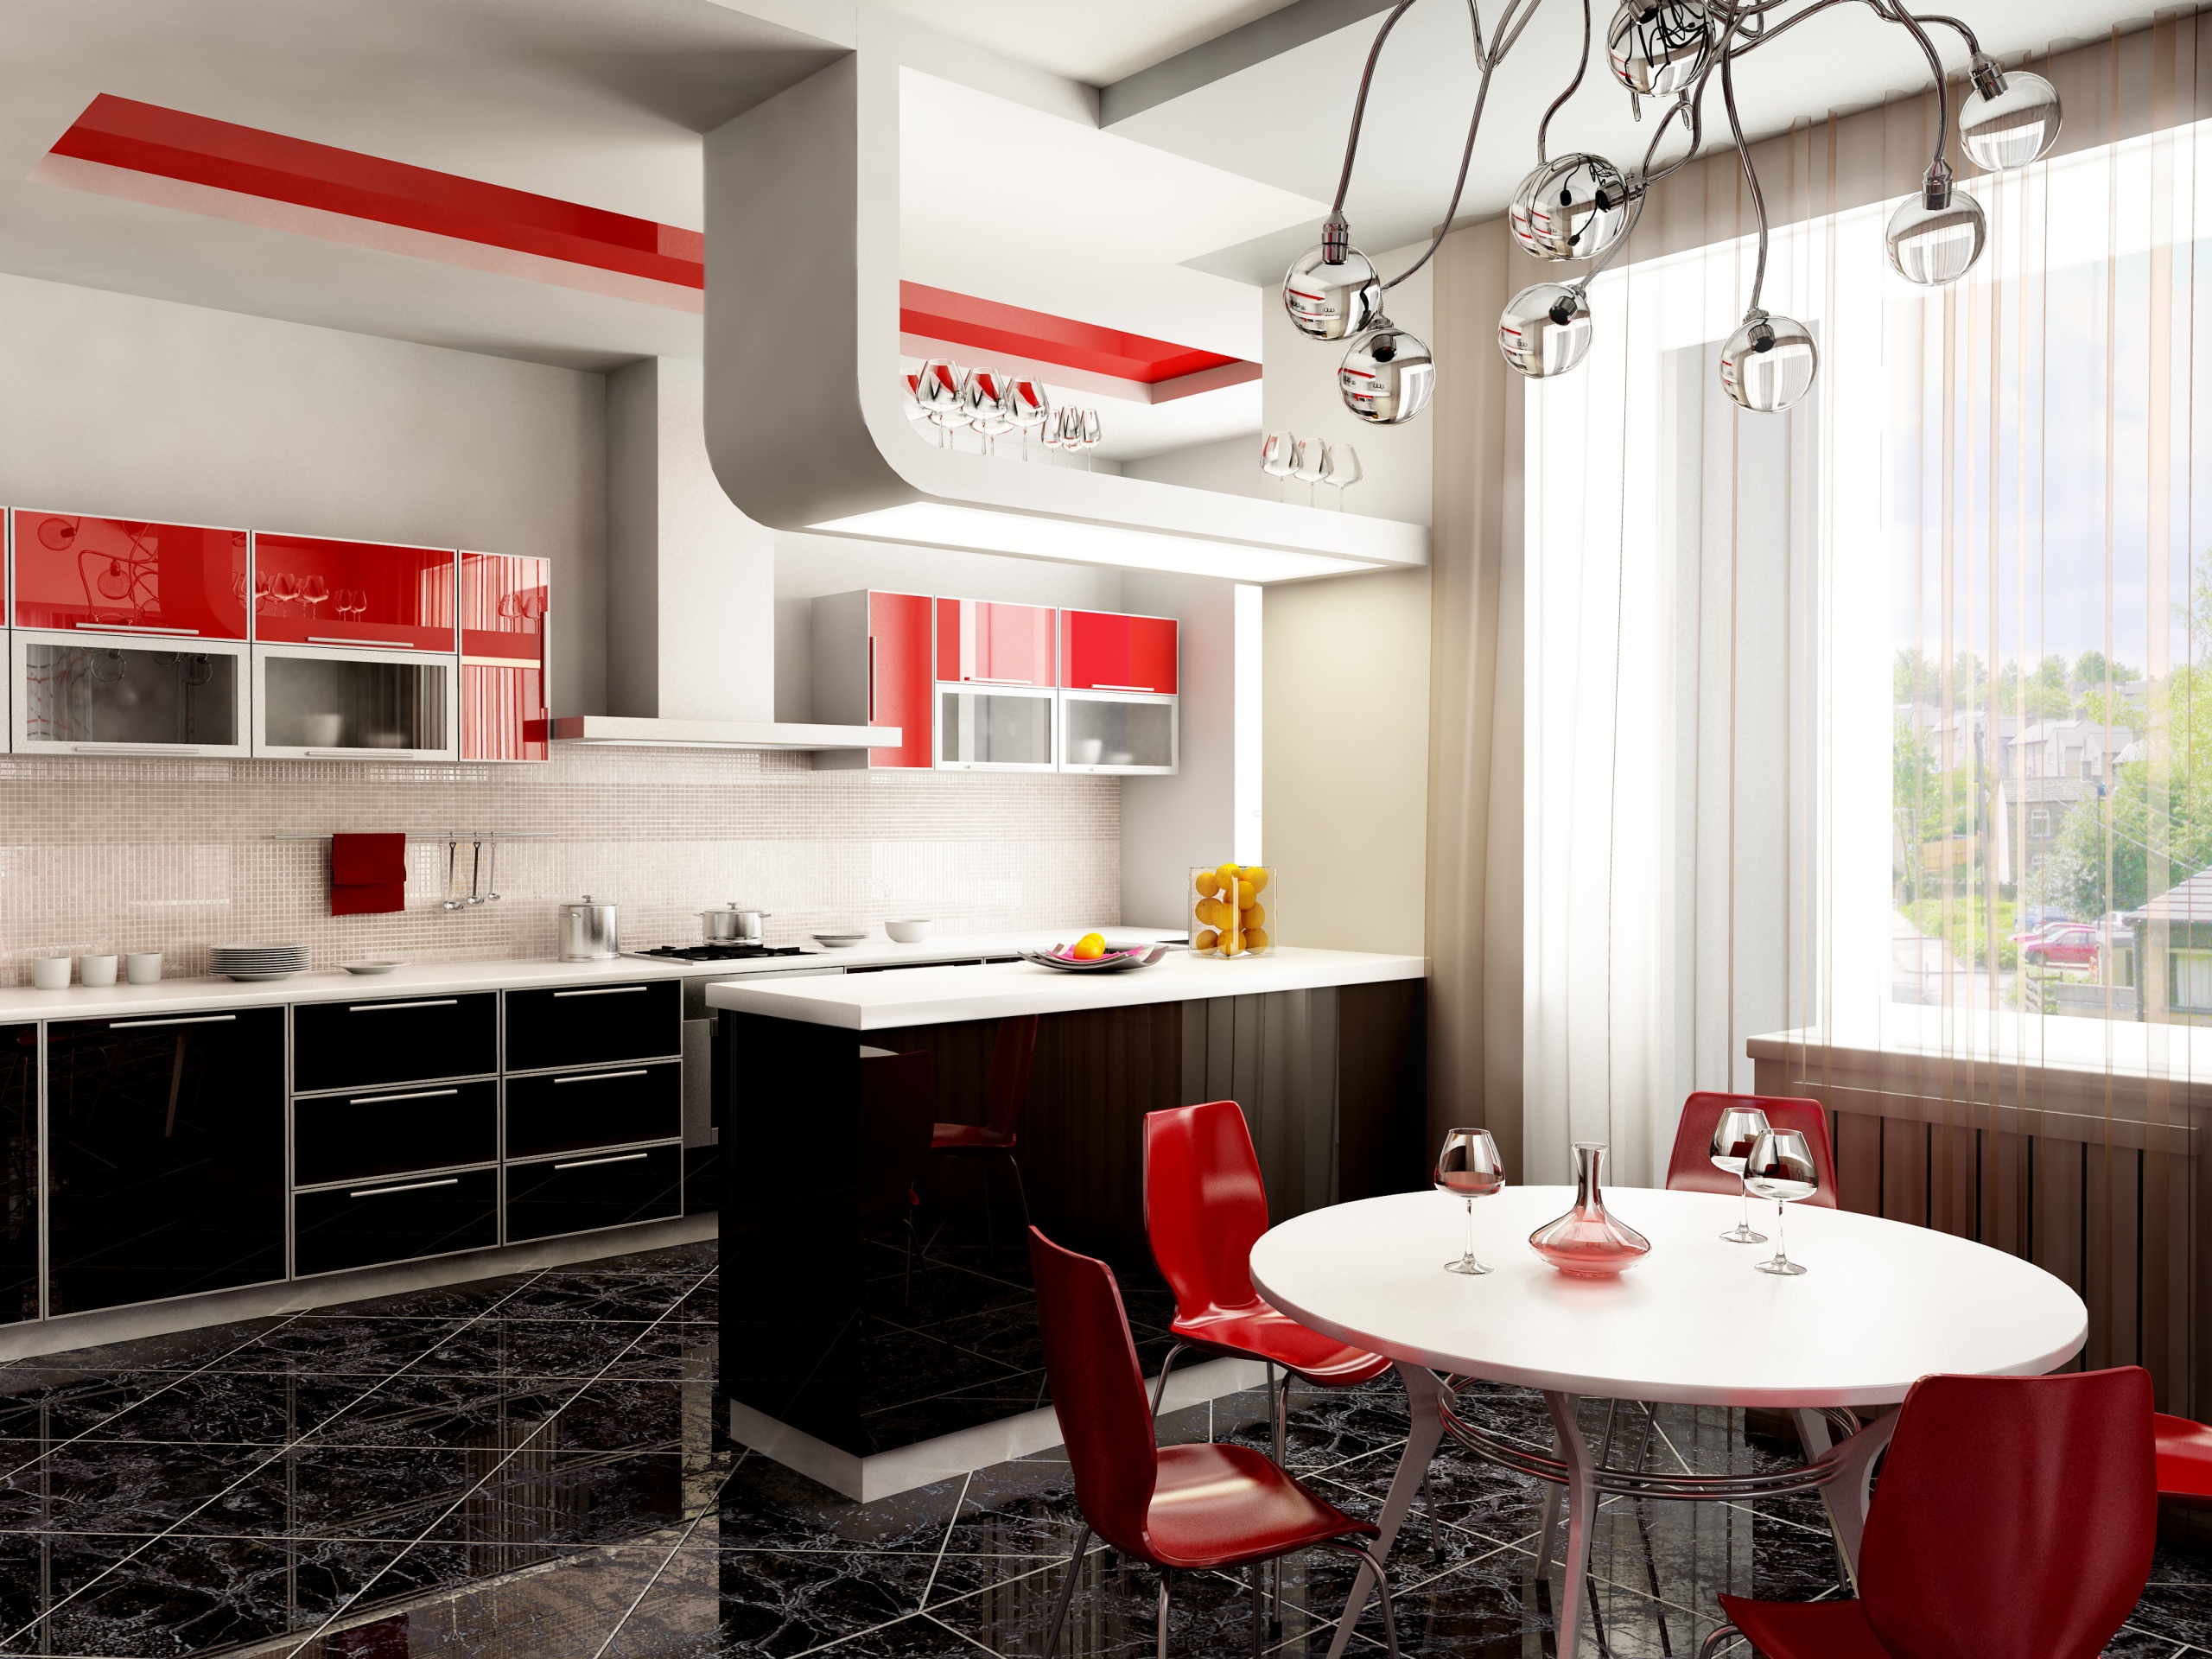 carta da parati della cucina,interior design,camera,mobilia,rosso,controsoffitto